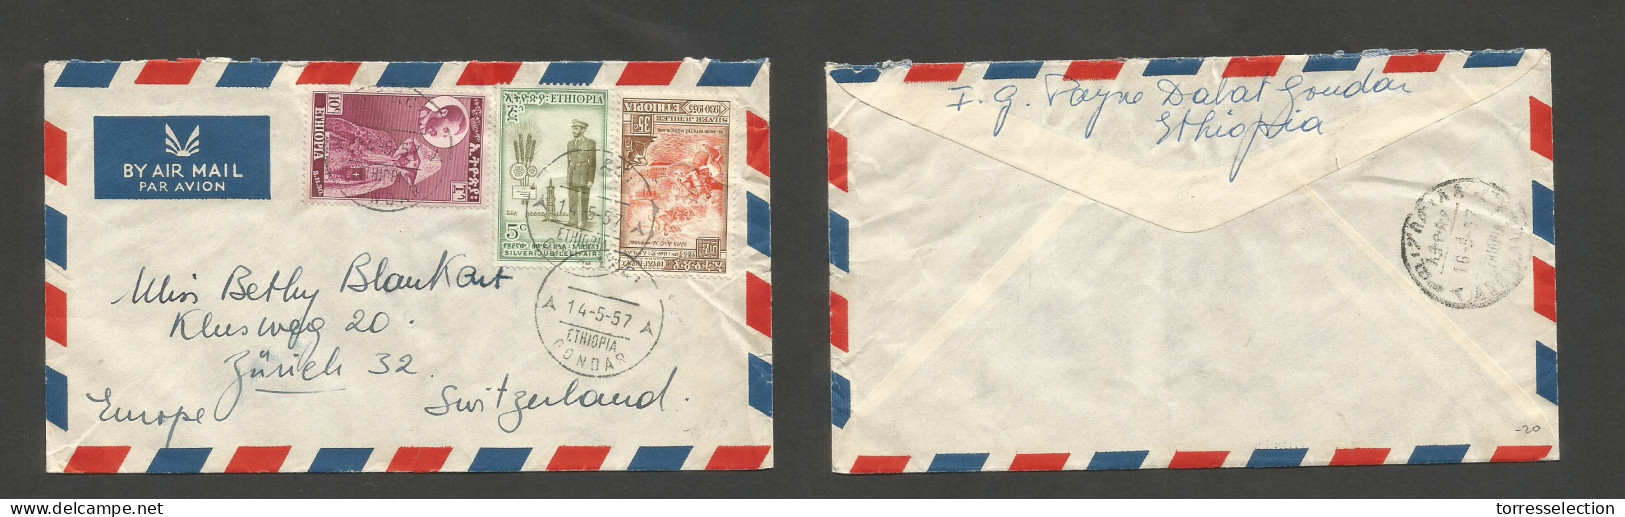 ETHIOPIA. 1957 (14 May) Gondar - Switzerland, Zurich. Air Multifkd Mixed Issues Envelope, Tied Cds. VF. - Etiopia